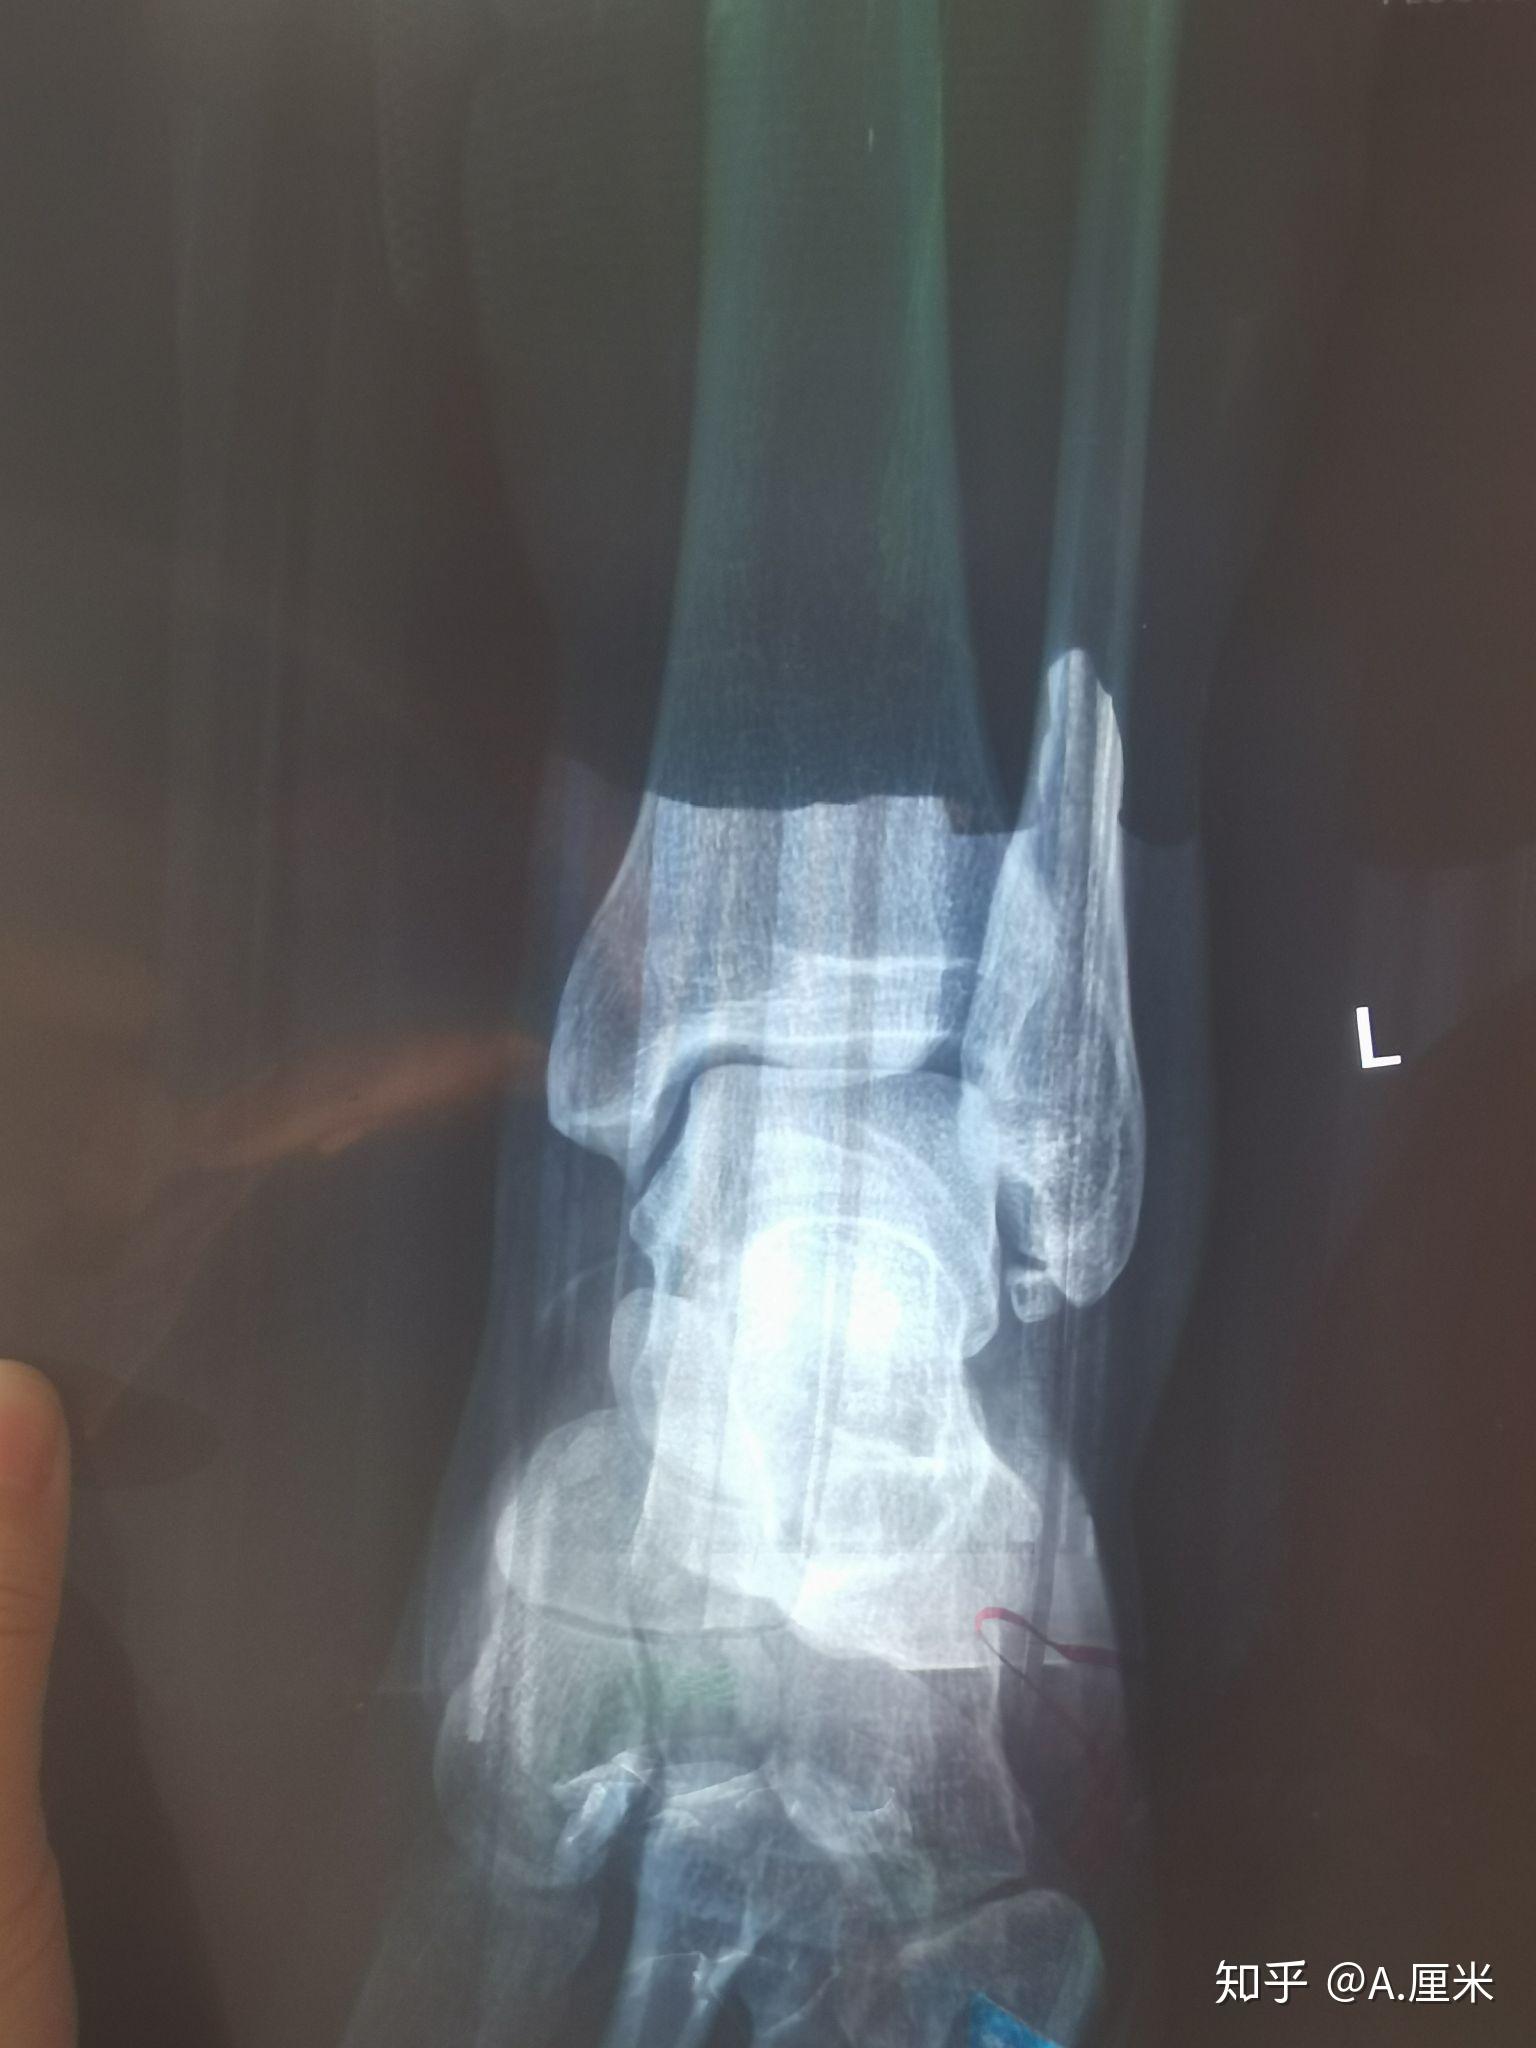 足部骨折x光片图片